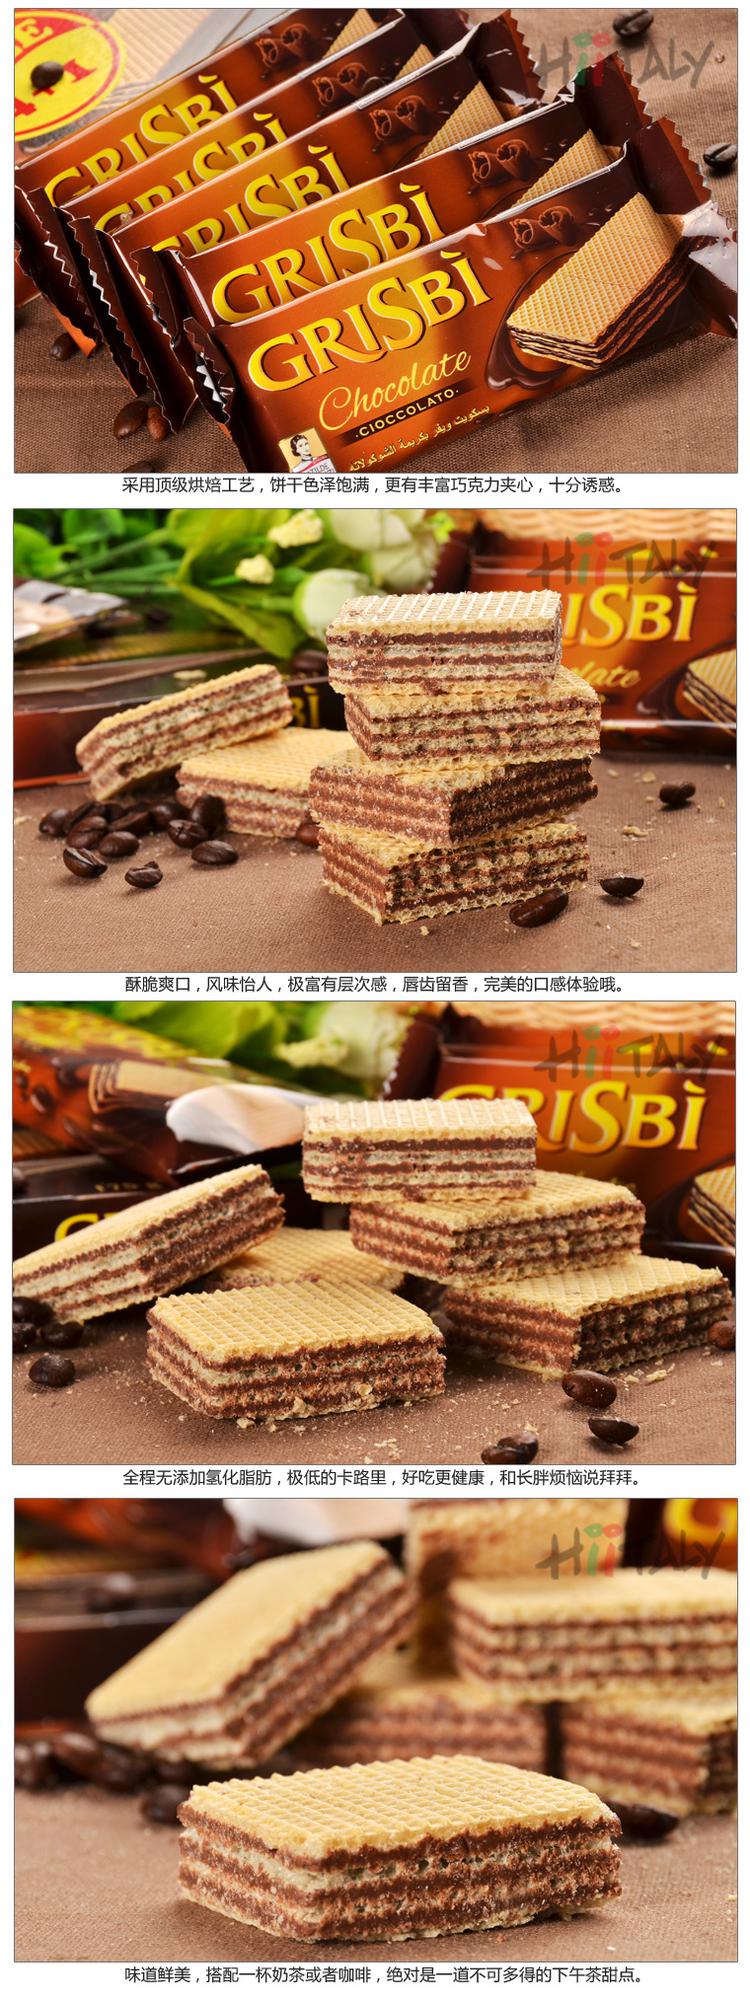 【淘最意大利】维鲜 格里斯巧克力华夫饼干 175g 意大利进口